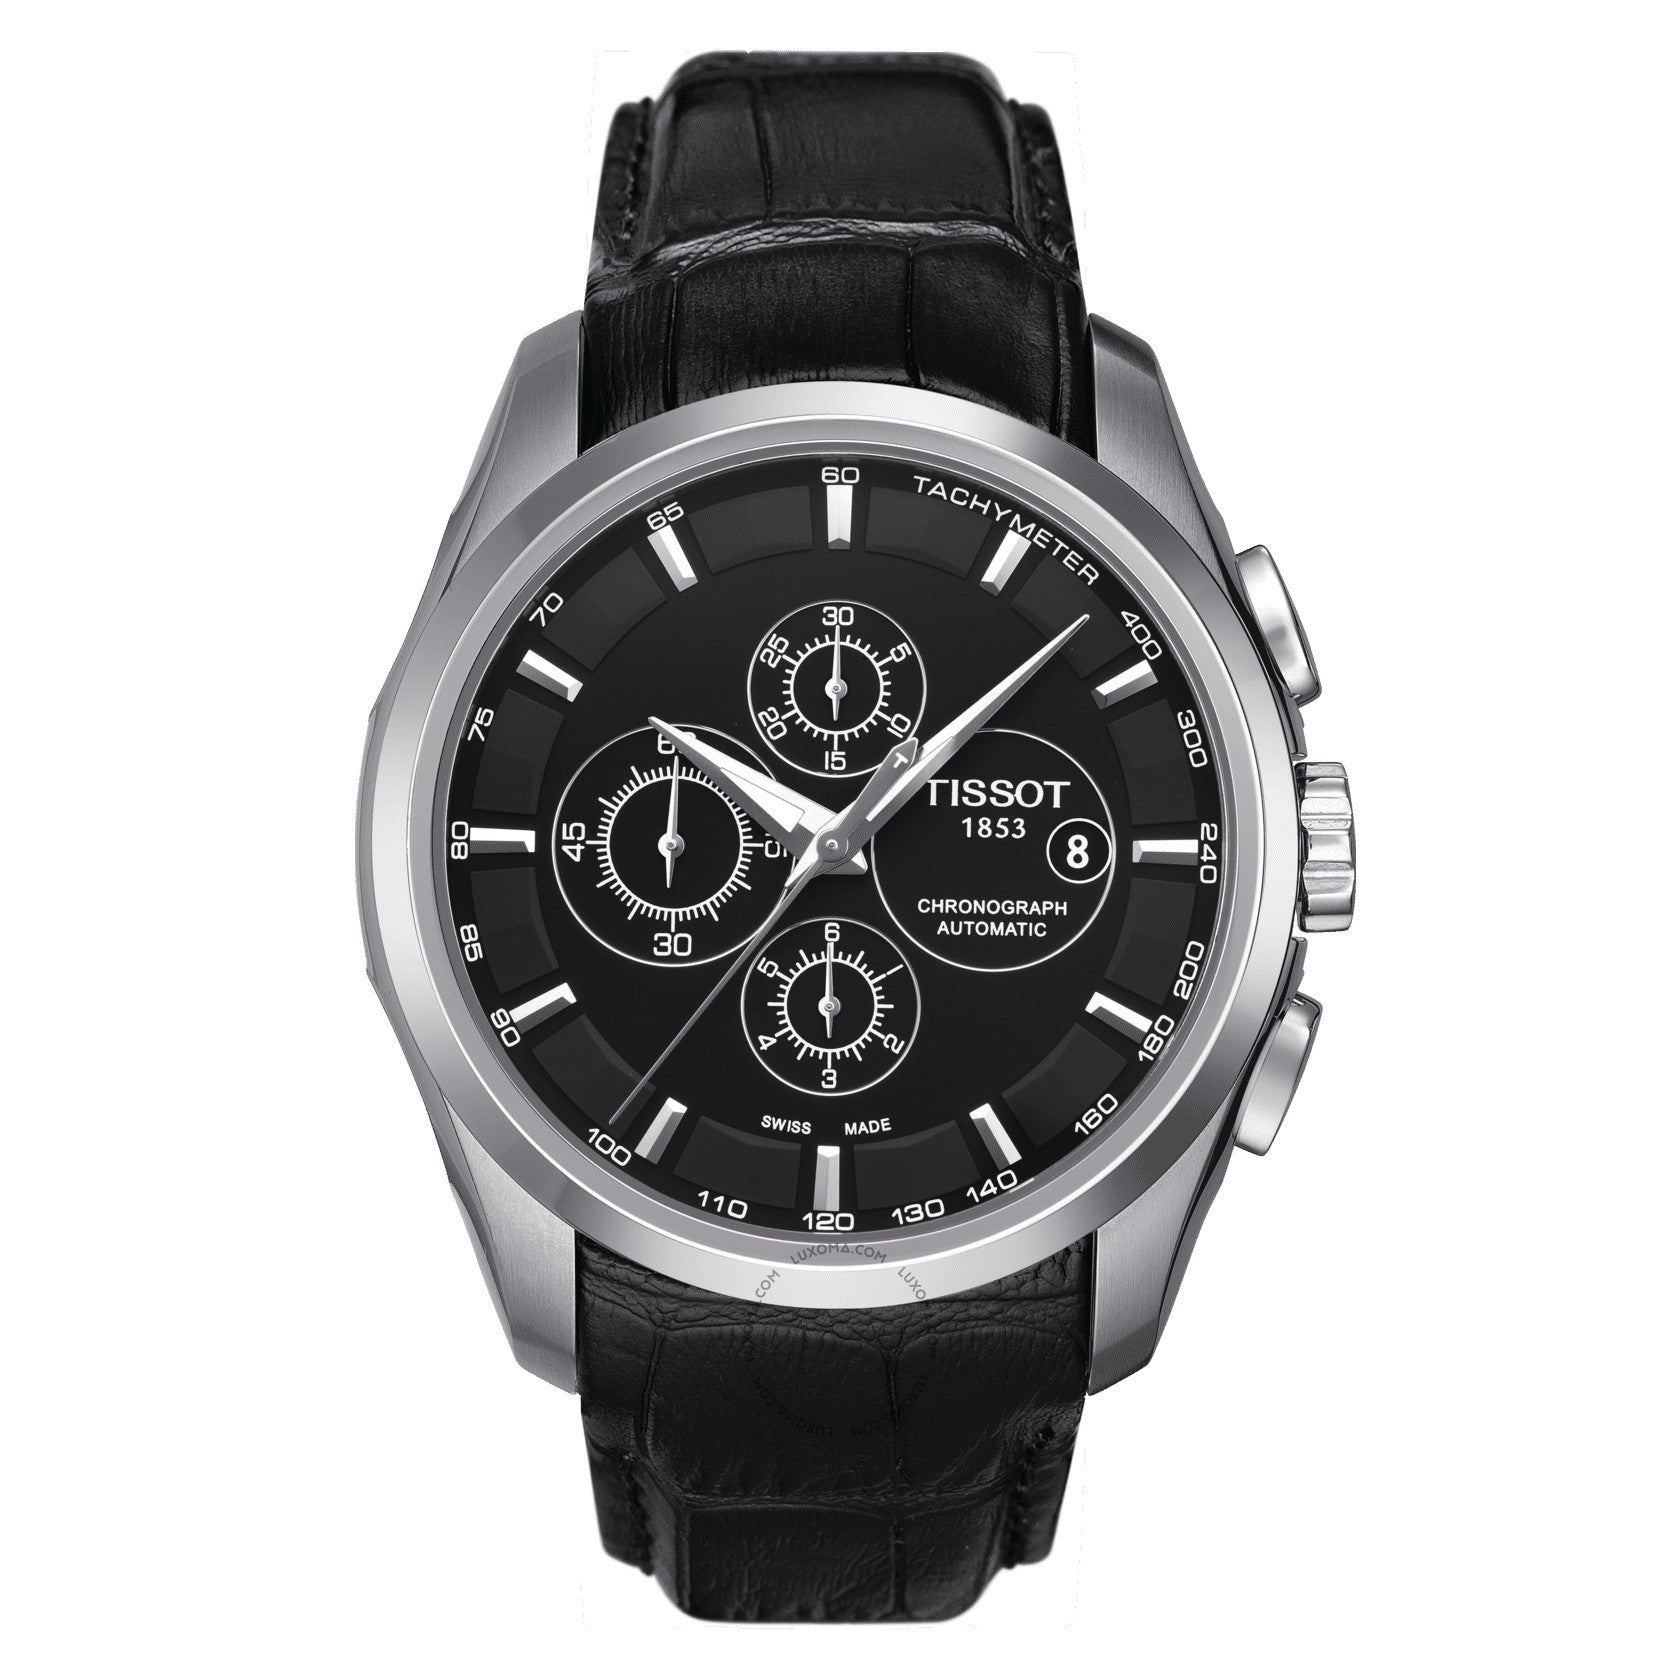 Tissot Couturier Chronograph Black Dial Men's Watch T035.627.16.051.00